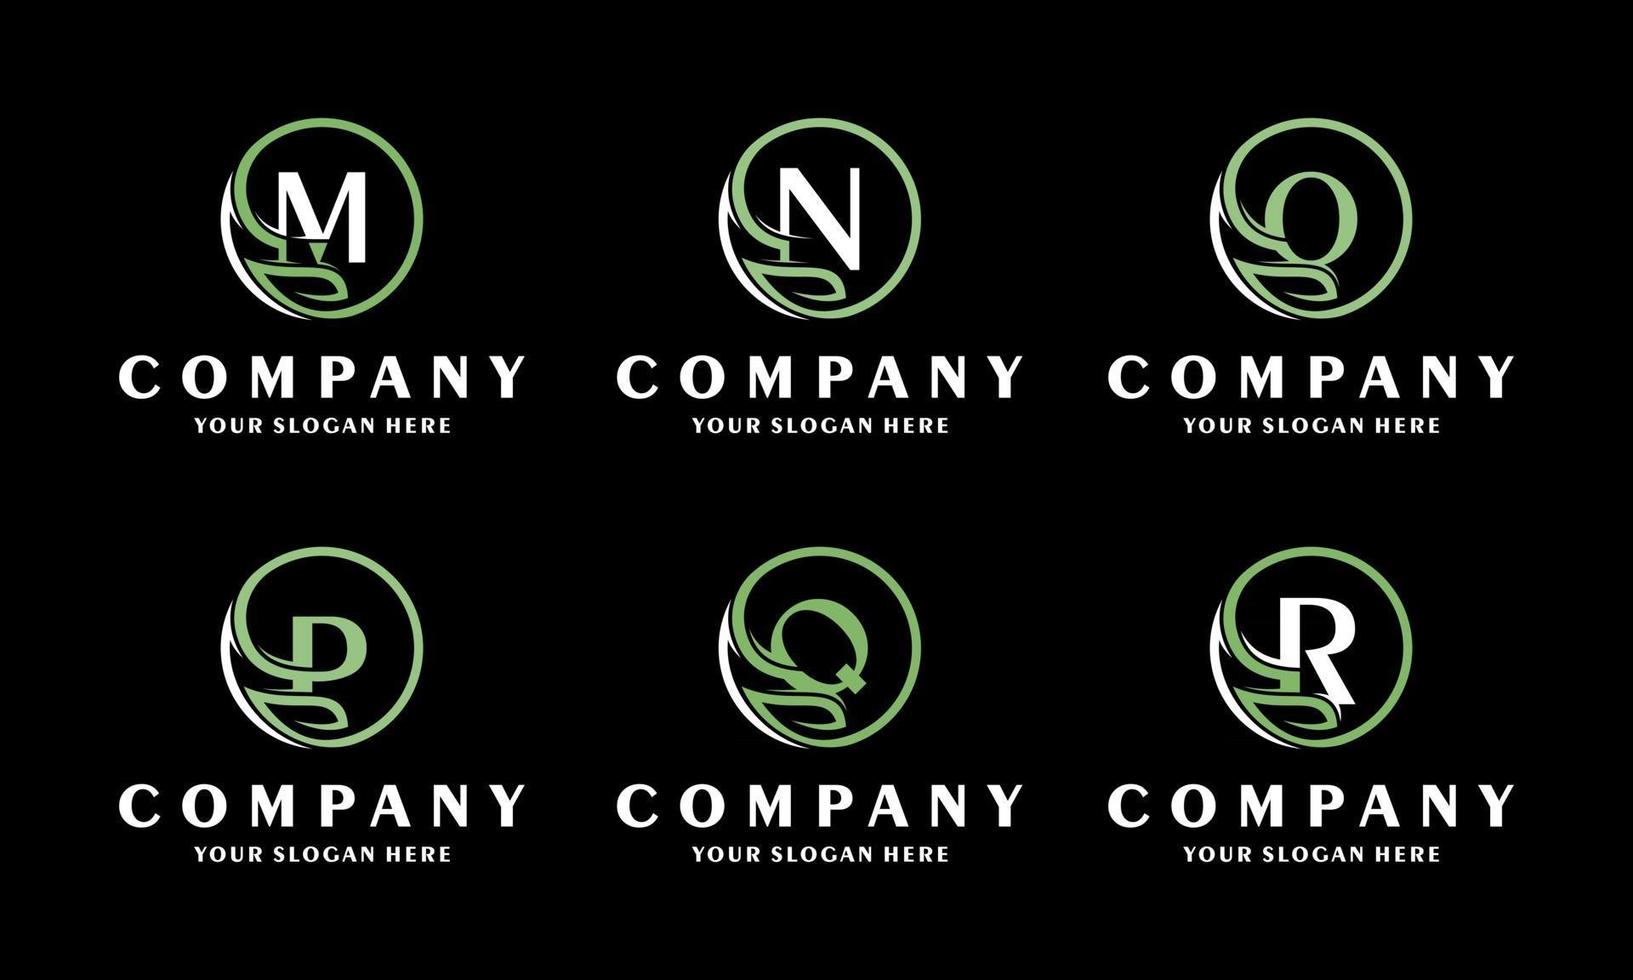 alfabet logo ontwerp inspiratie collectie set van groene letters eco logo met creatieve bladeren. icoon voor zakelijke luxe, elegant, eenvoudig. vector